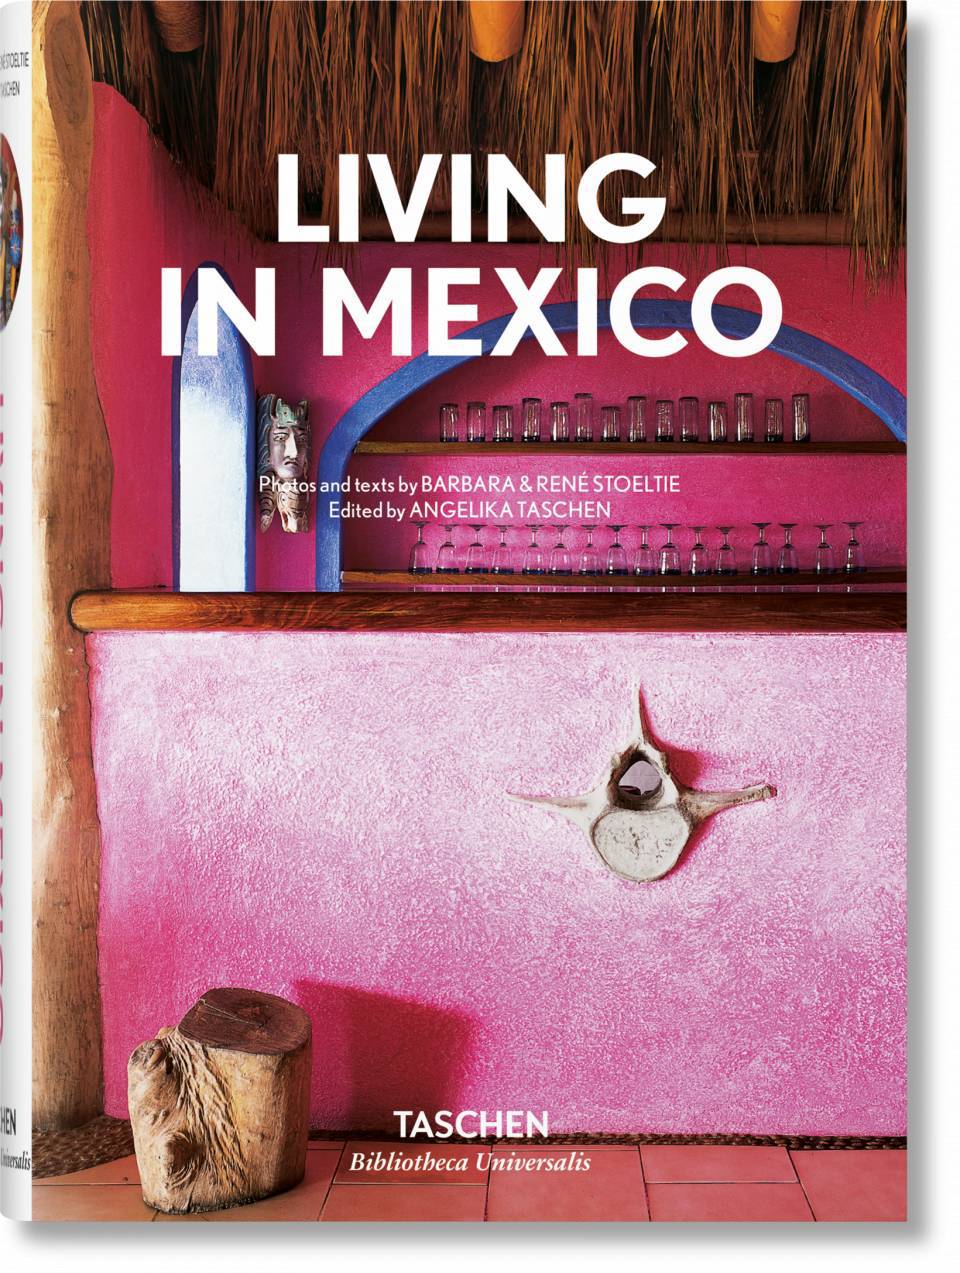 Libro Taschen Living in Mexico - Bayolo Concept Store